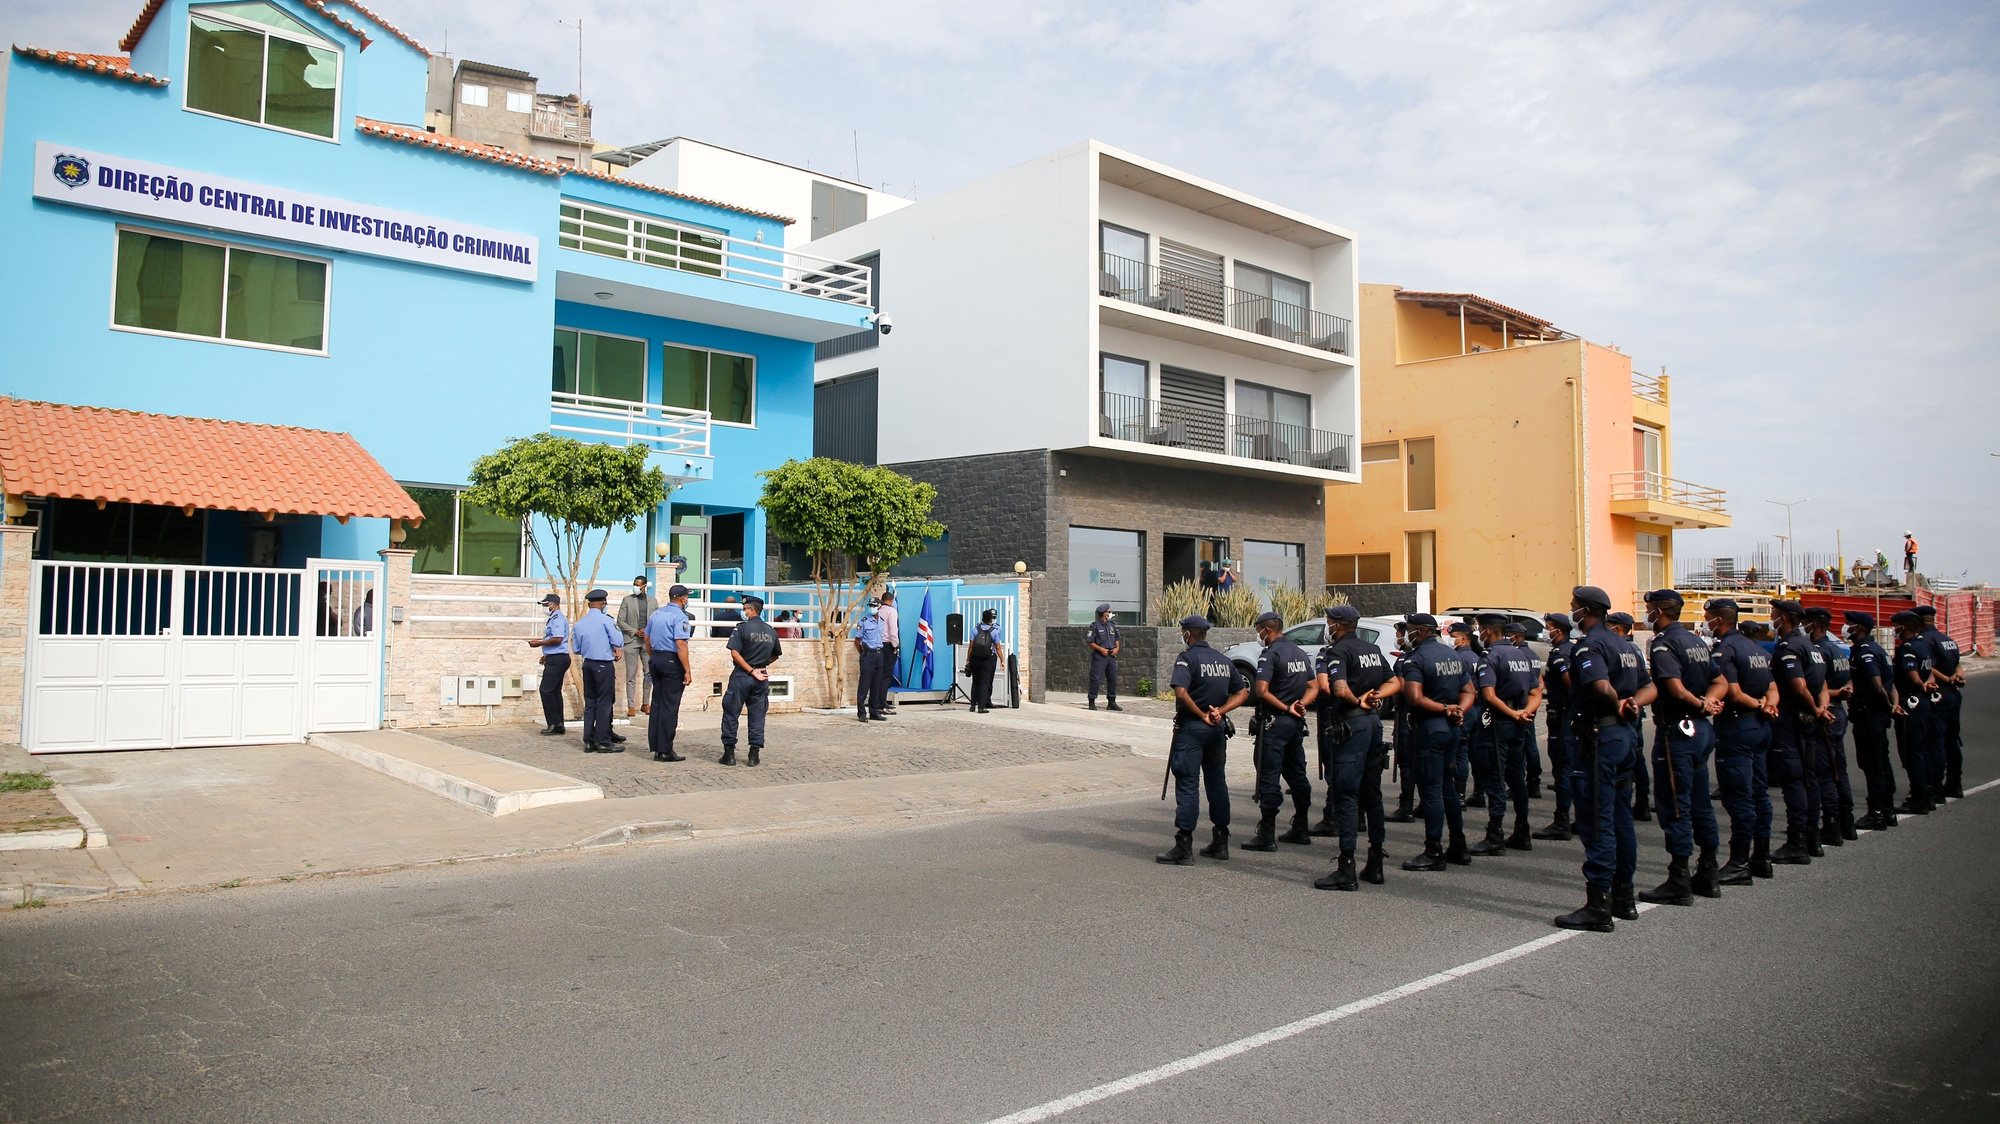 Foi esta manhã inaugurada a sede da Direção Central de Investigação Criminal da Polícia Nacional cabo-verdiana  pelo ministro da Administração Interna de Cabo Verde, Paulo Rocha (ausente da fotografia), na cidade da Praia, Cabo Verde, 09 de fevereiro de 2021. FERNANDO DE PINA/LUSA